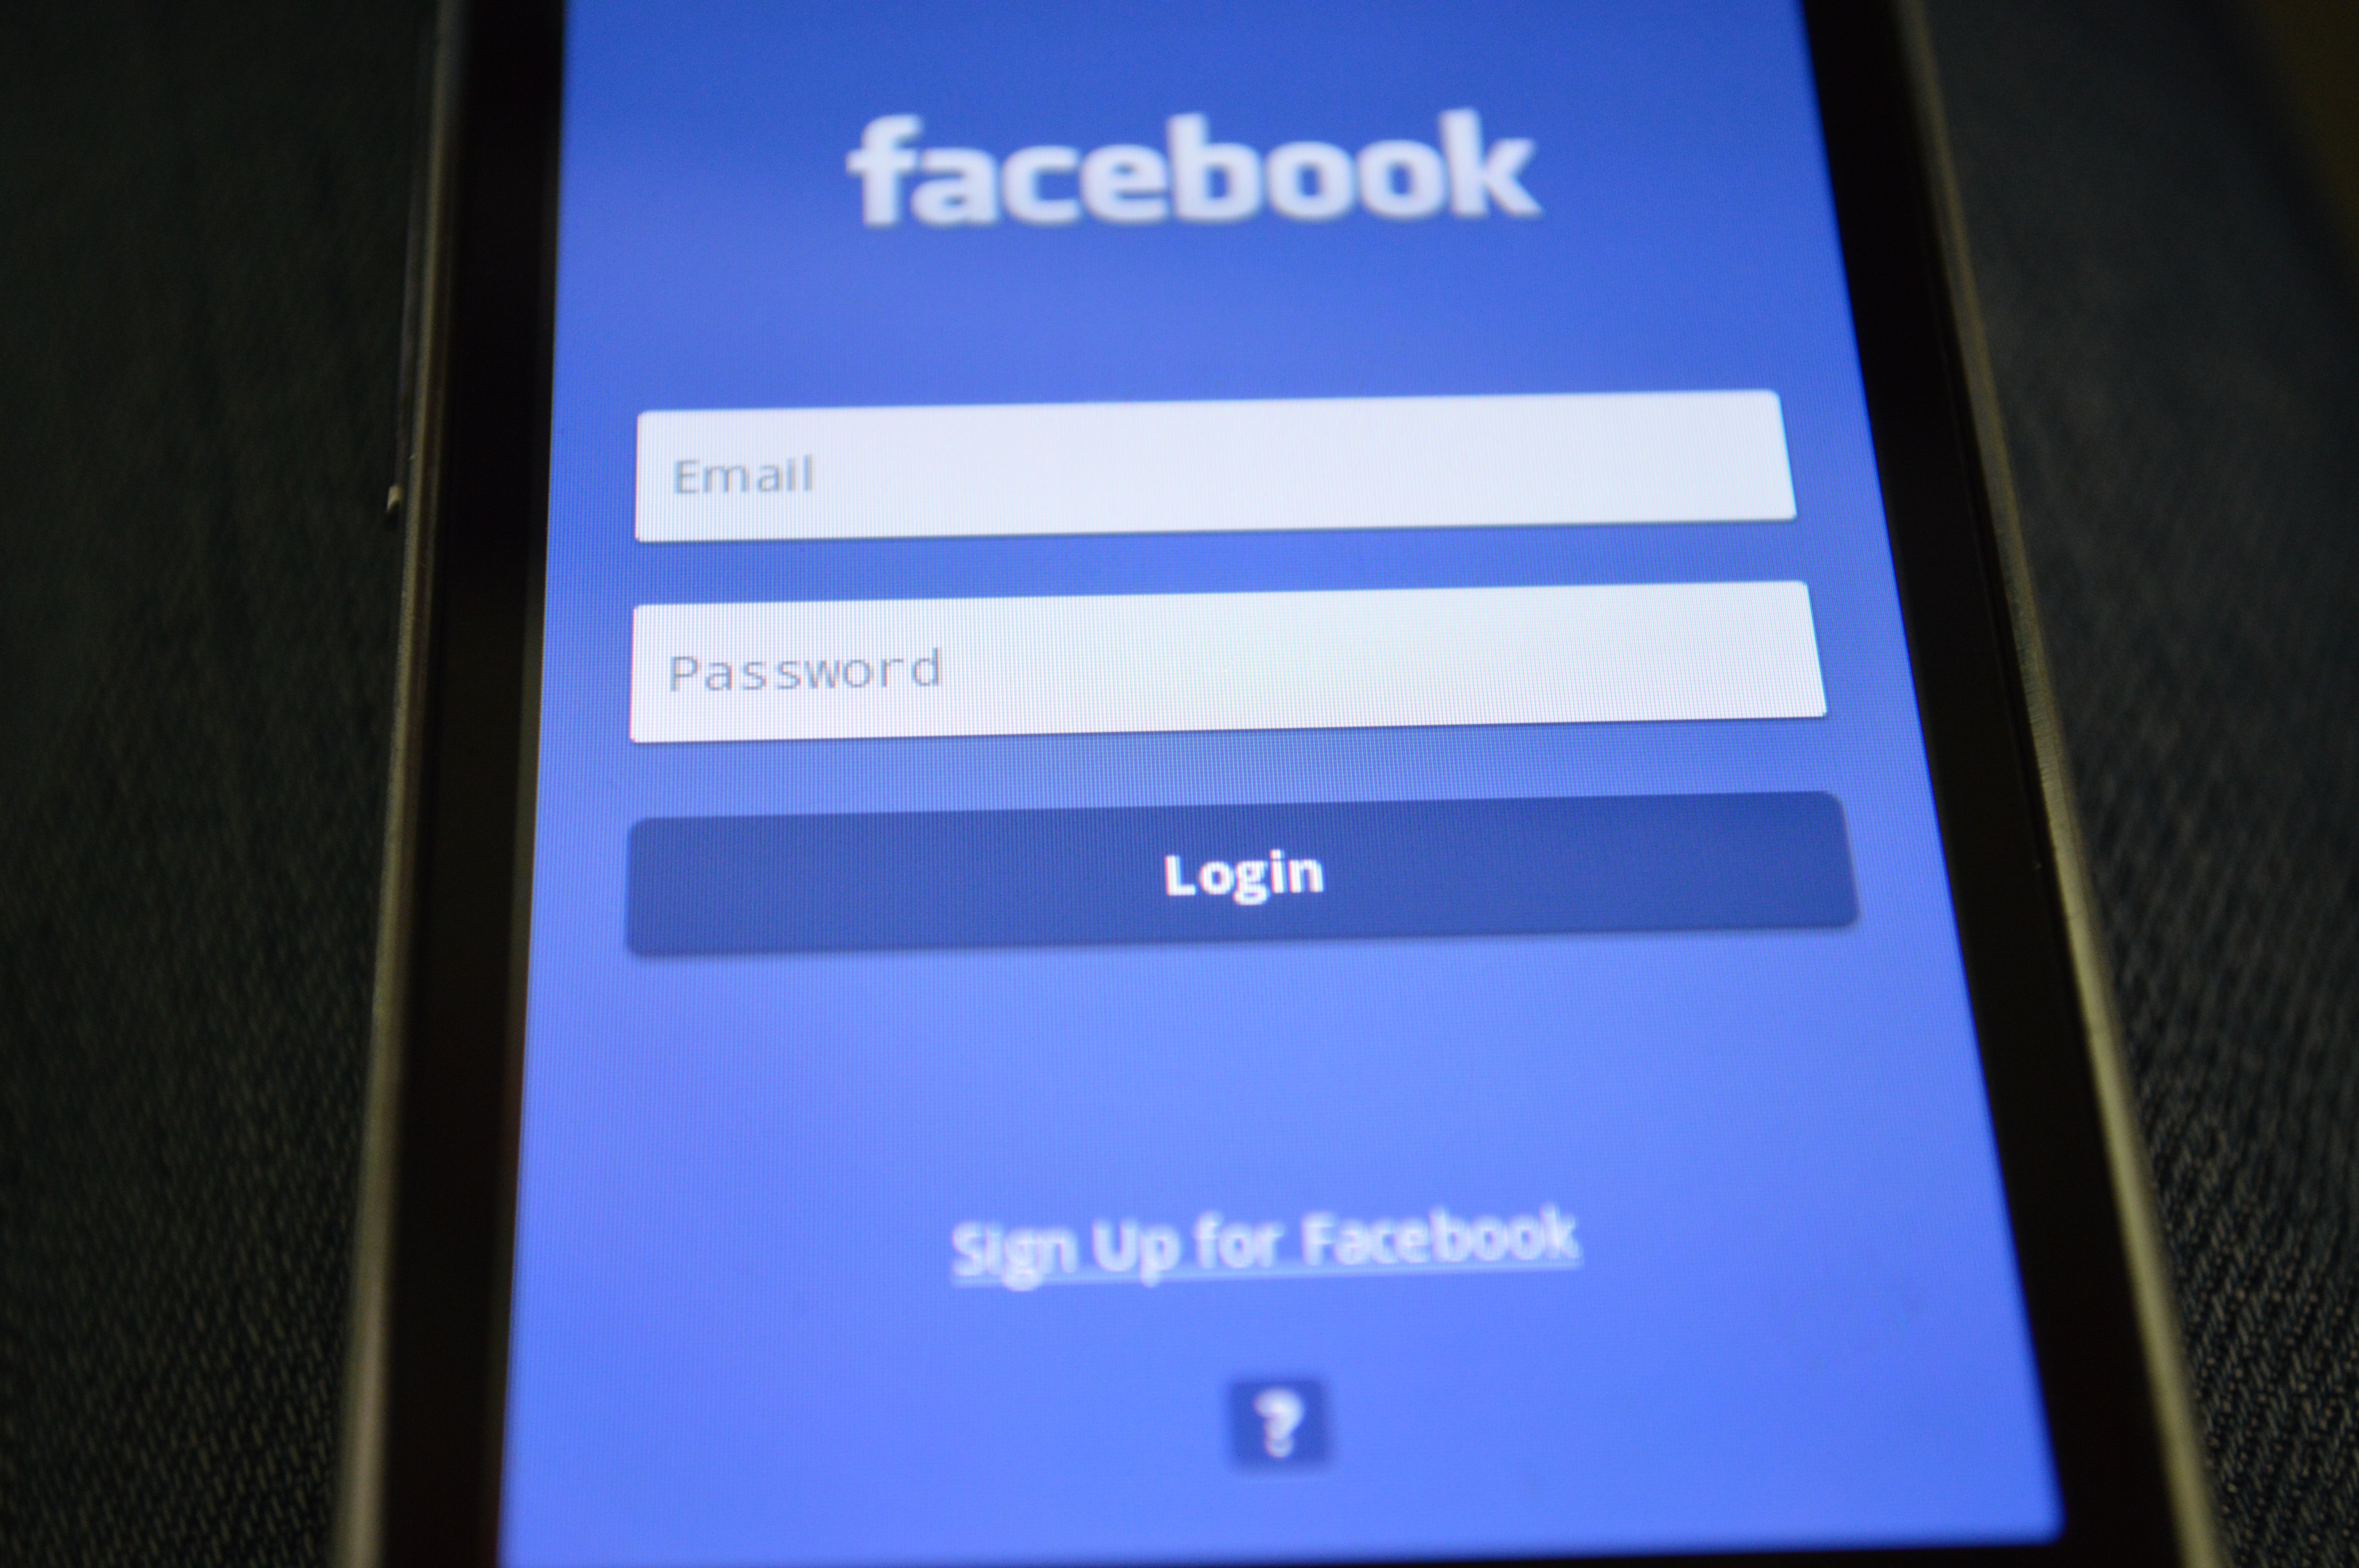 Los profesionales de Ciberseguridad están limitando su uso personal de Facebook